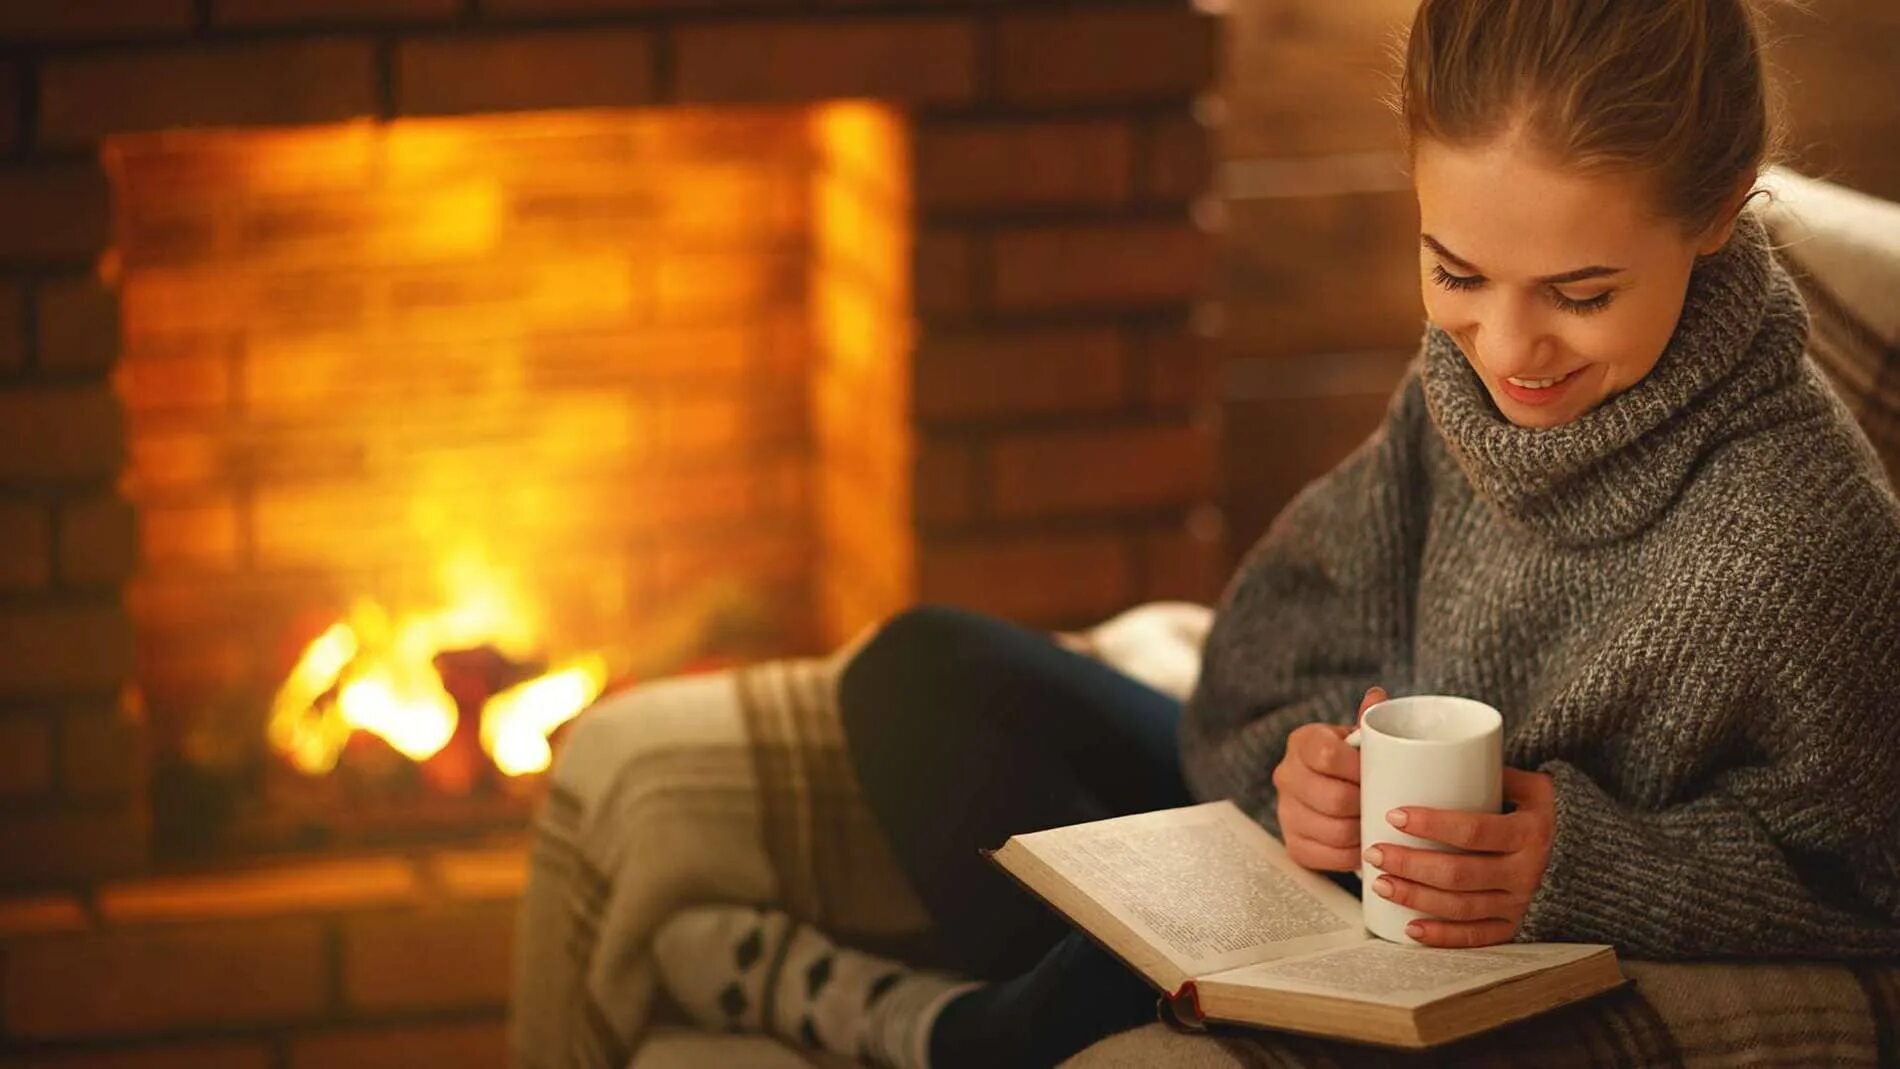 Чтение зимним вечером. Уютный плед камин. Женщина у камина с книгой. Зимний вечер у камина. Уютное чтение книг у камина.